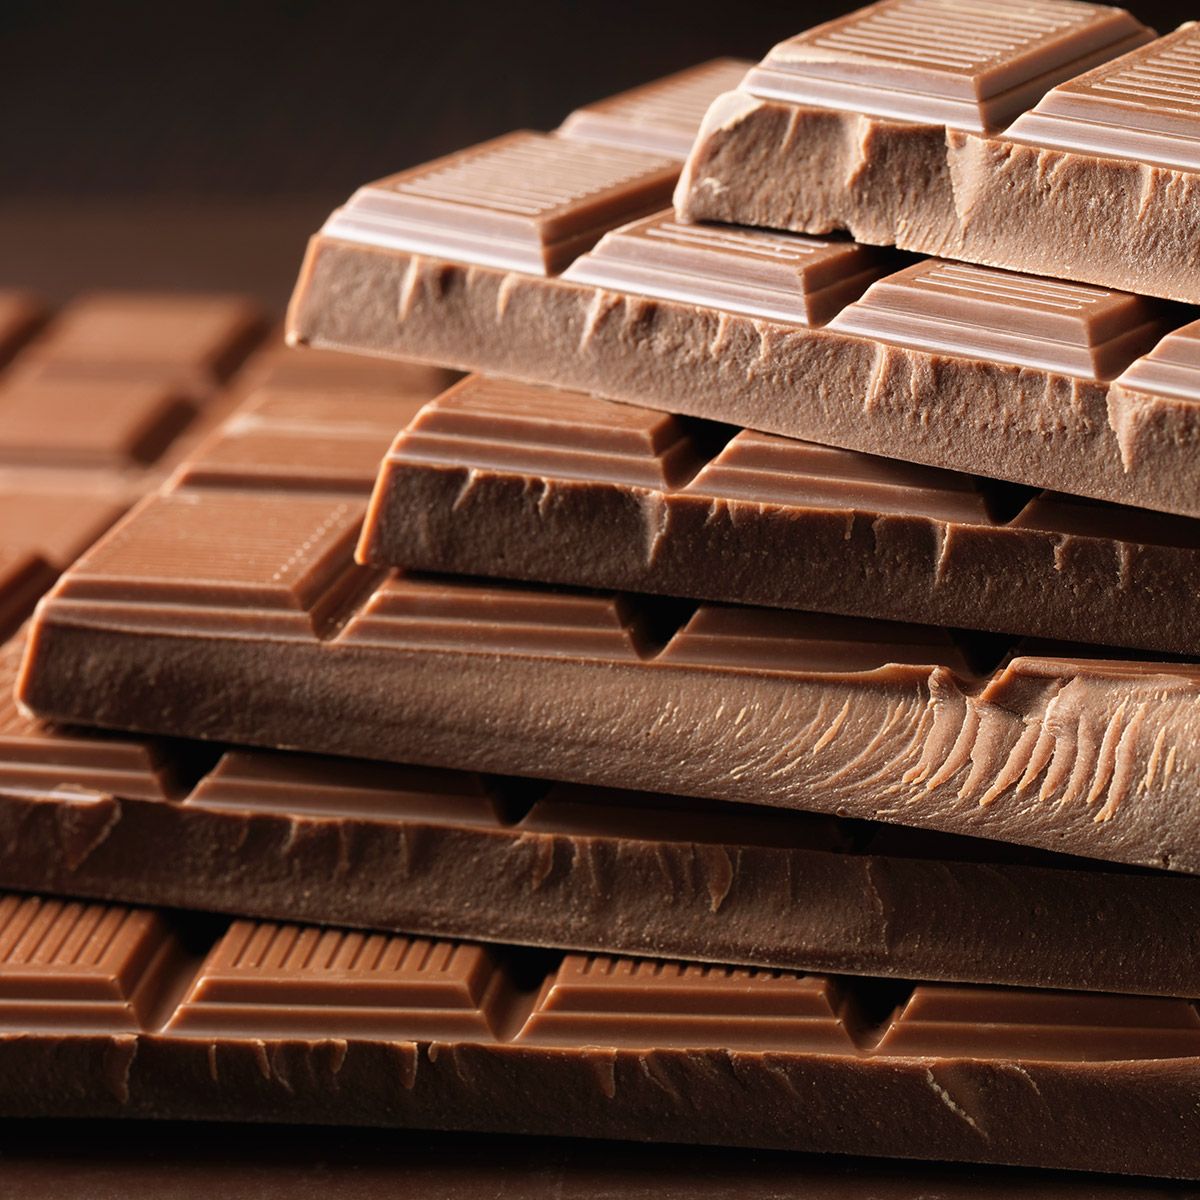 Comer chocolate al desayuno puede ayudar a quemar grasa, según científicos